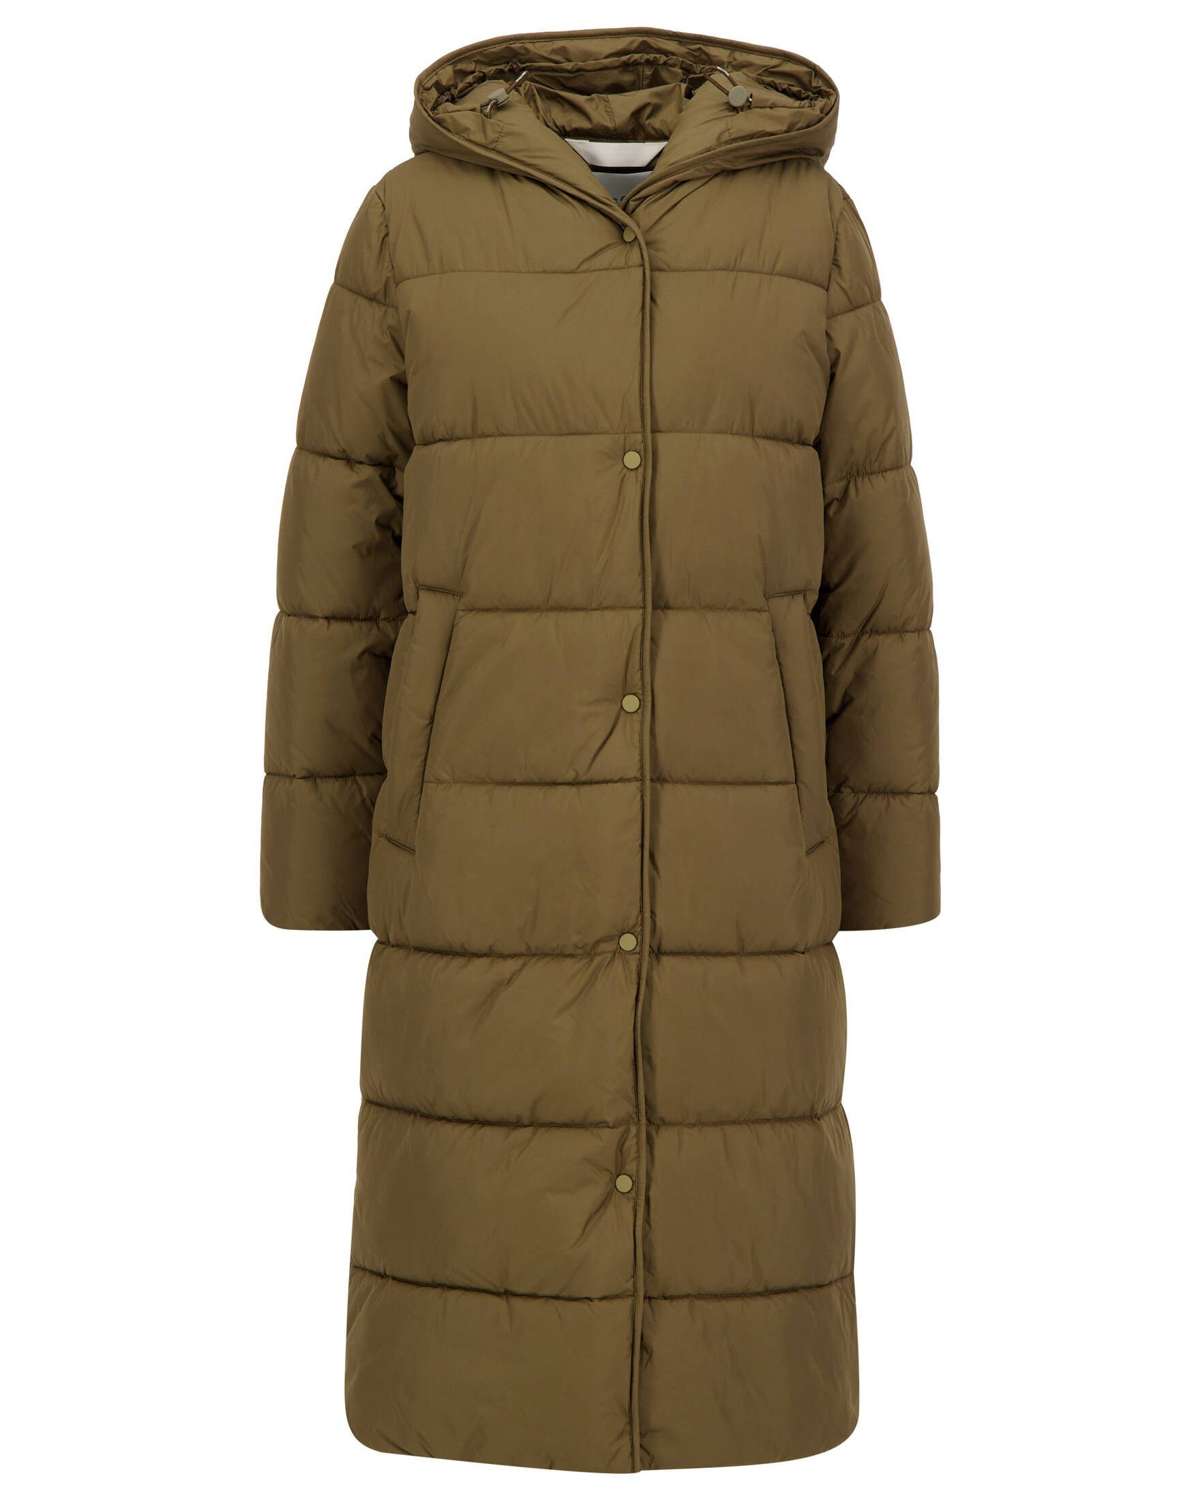 Стеганое пальто женское стеганое пальто с капюшоном (1 шт.)